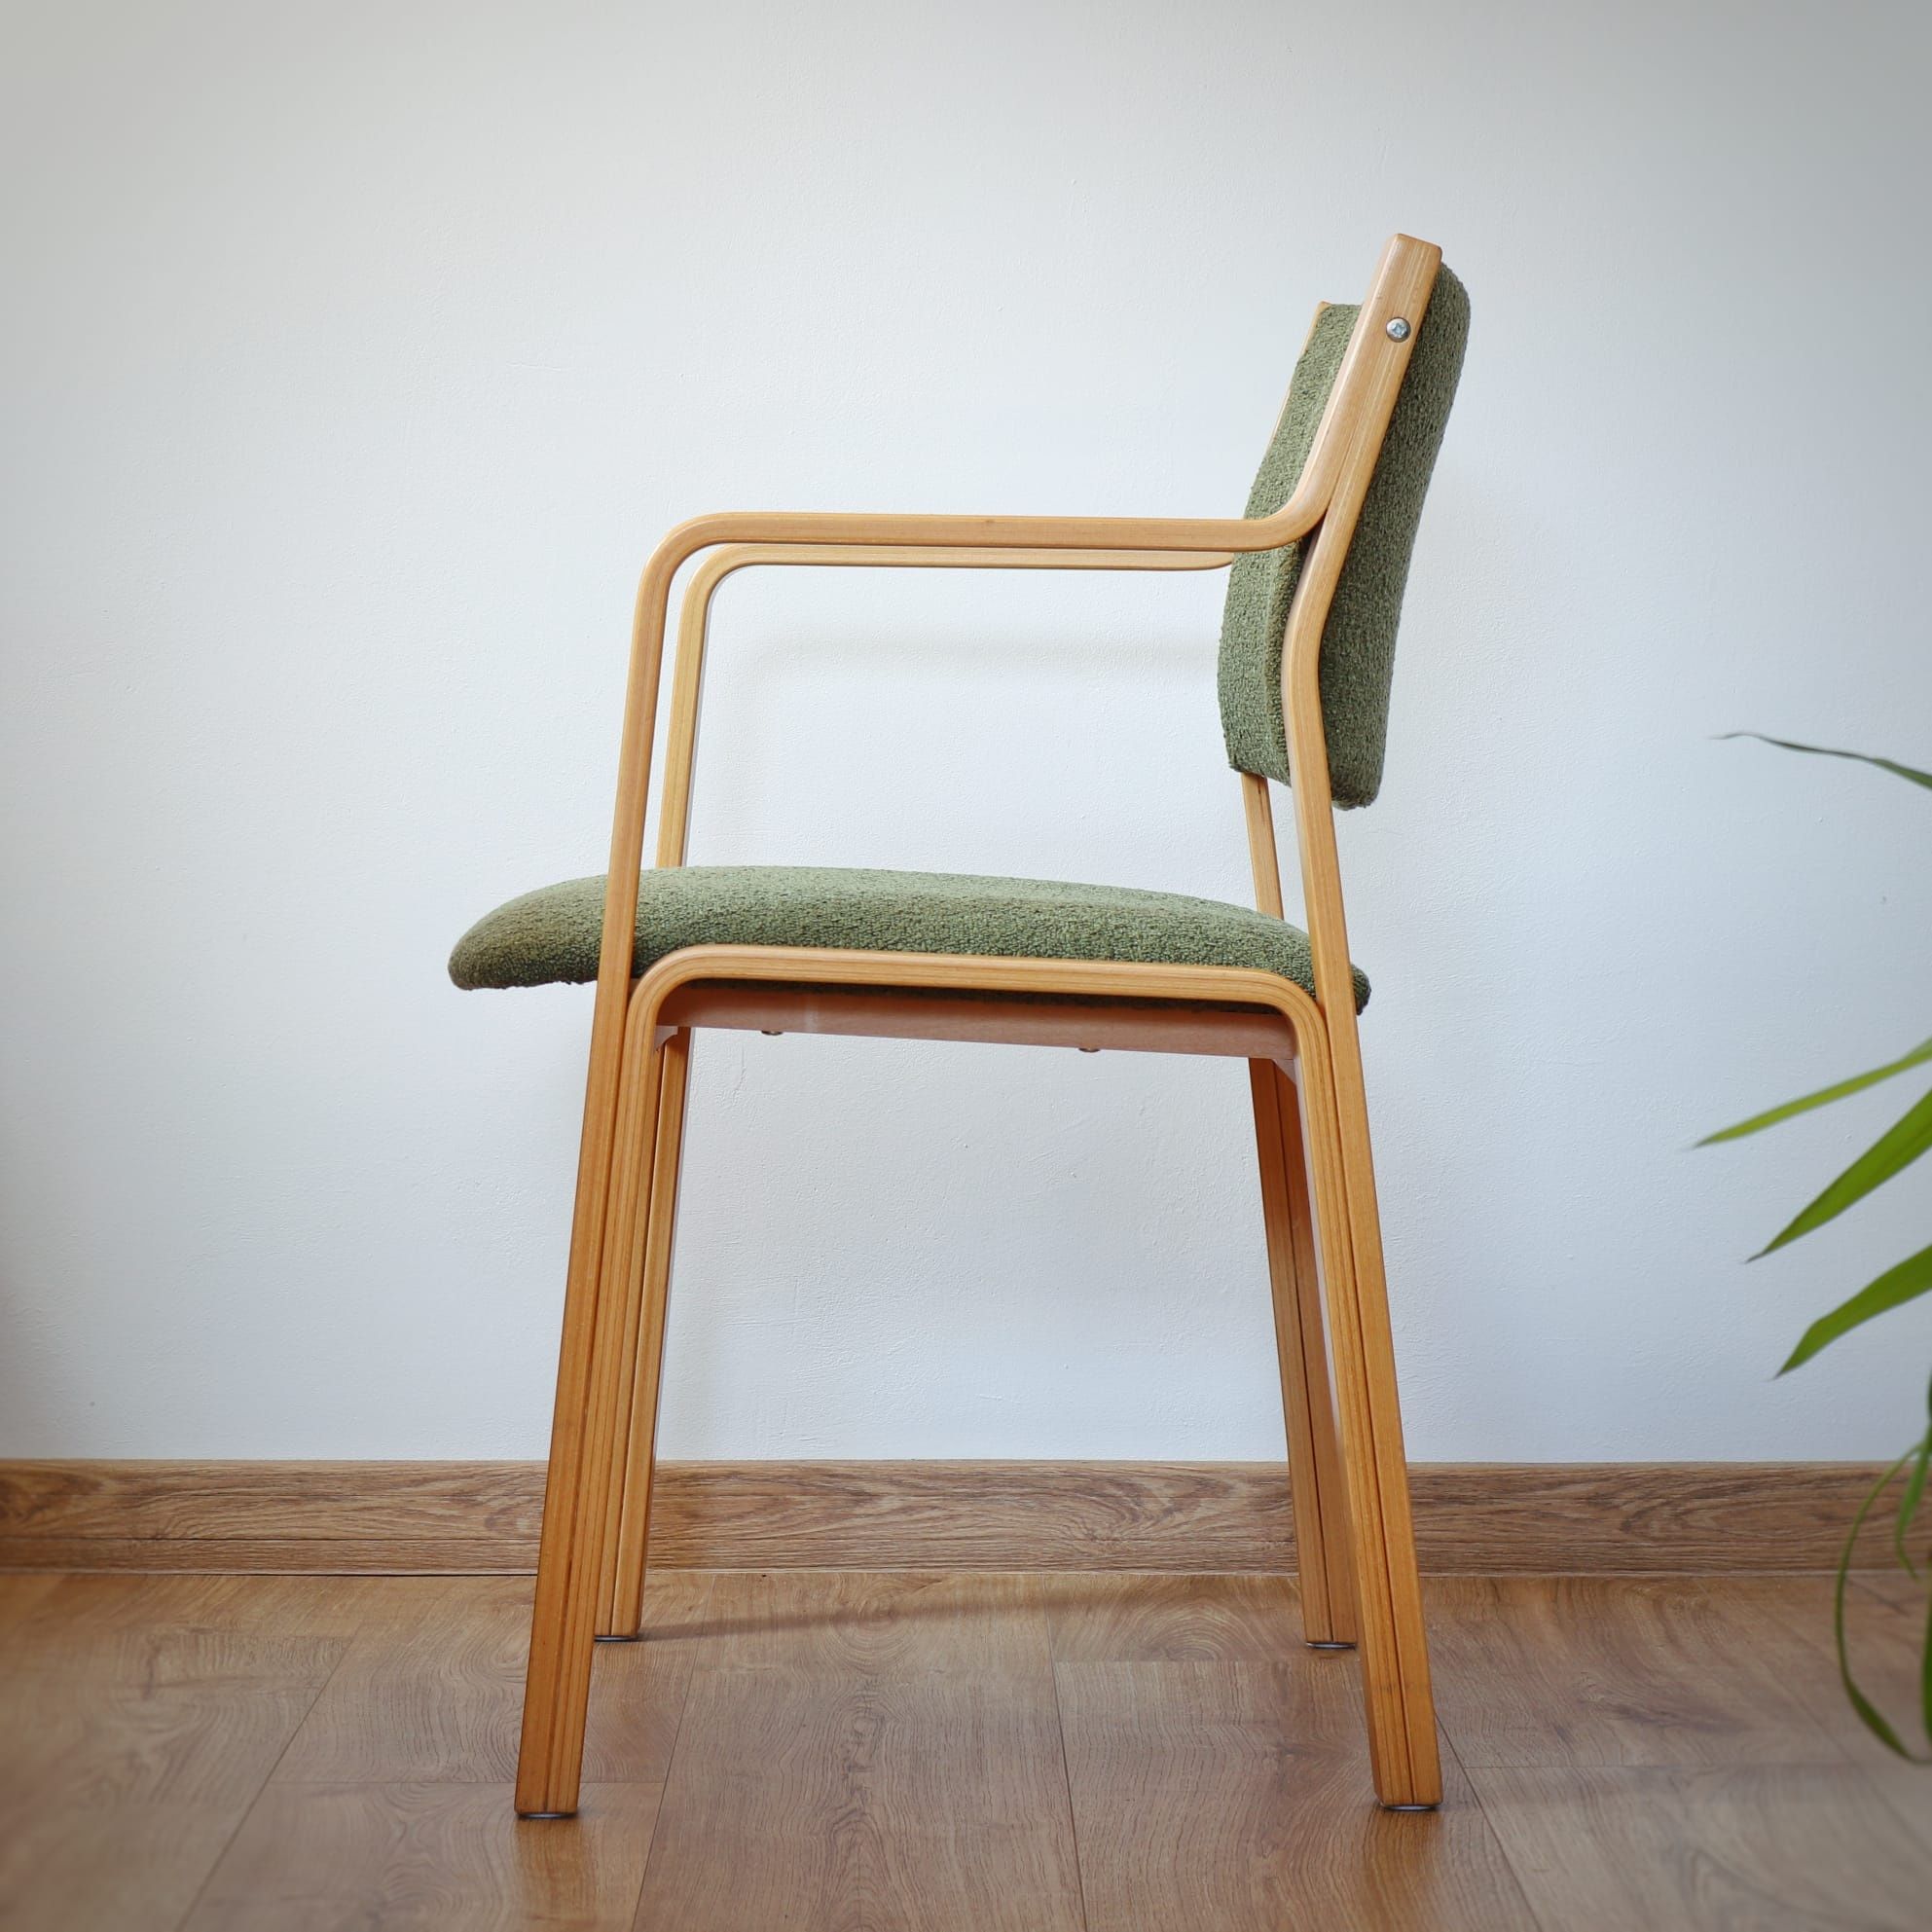 Duńskie bukowe krzesło fotel vintage bouclé retro Dania